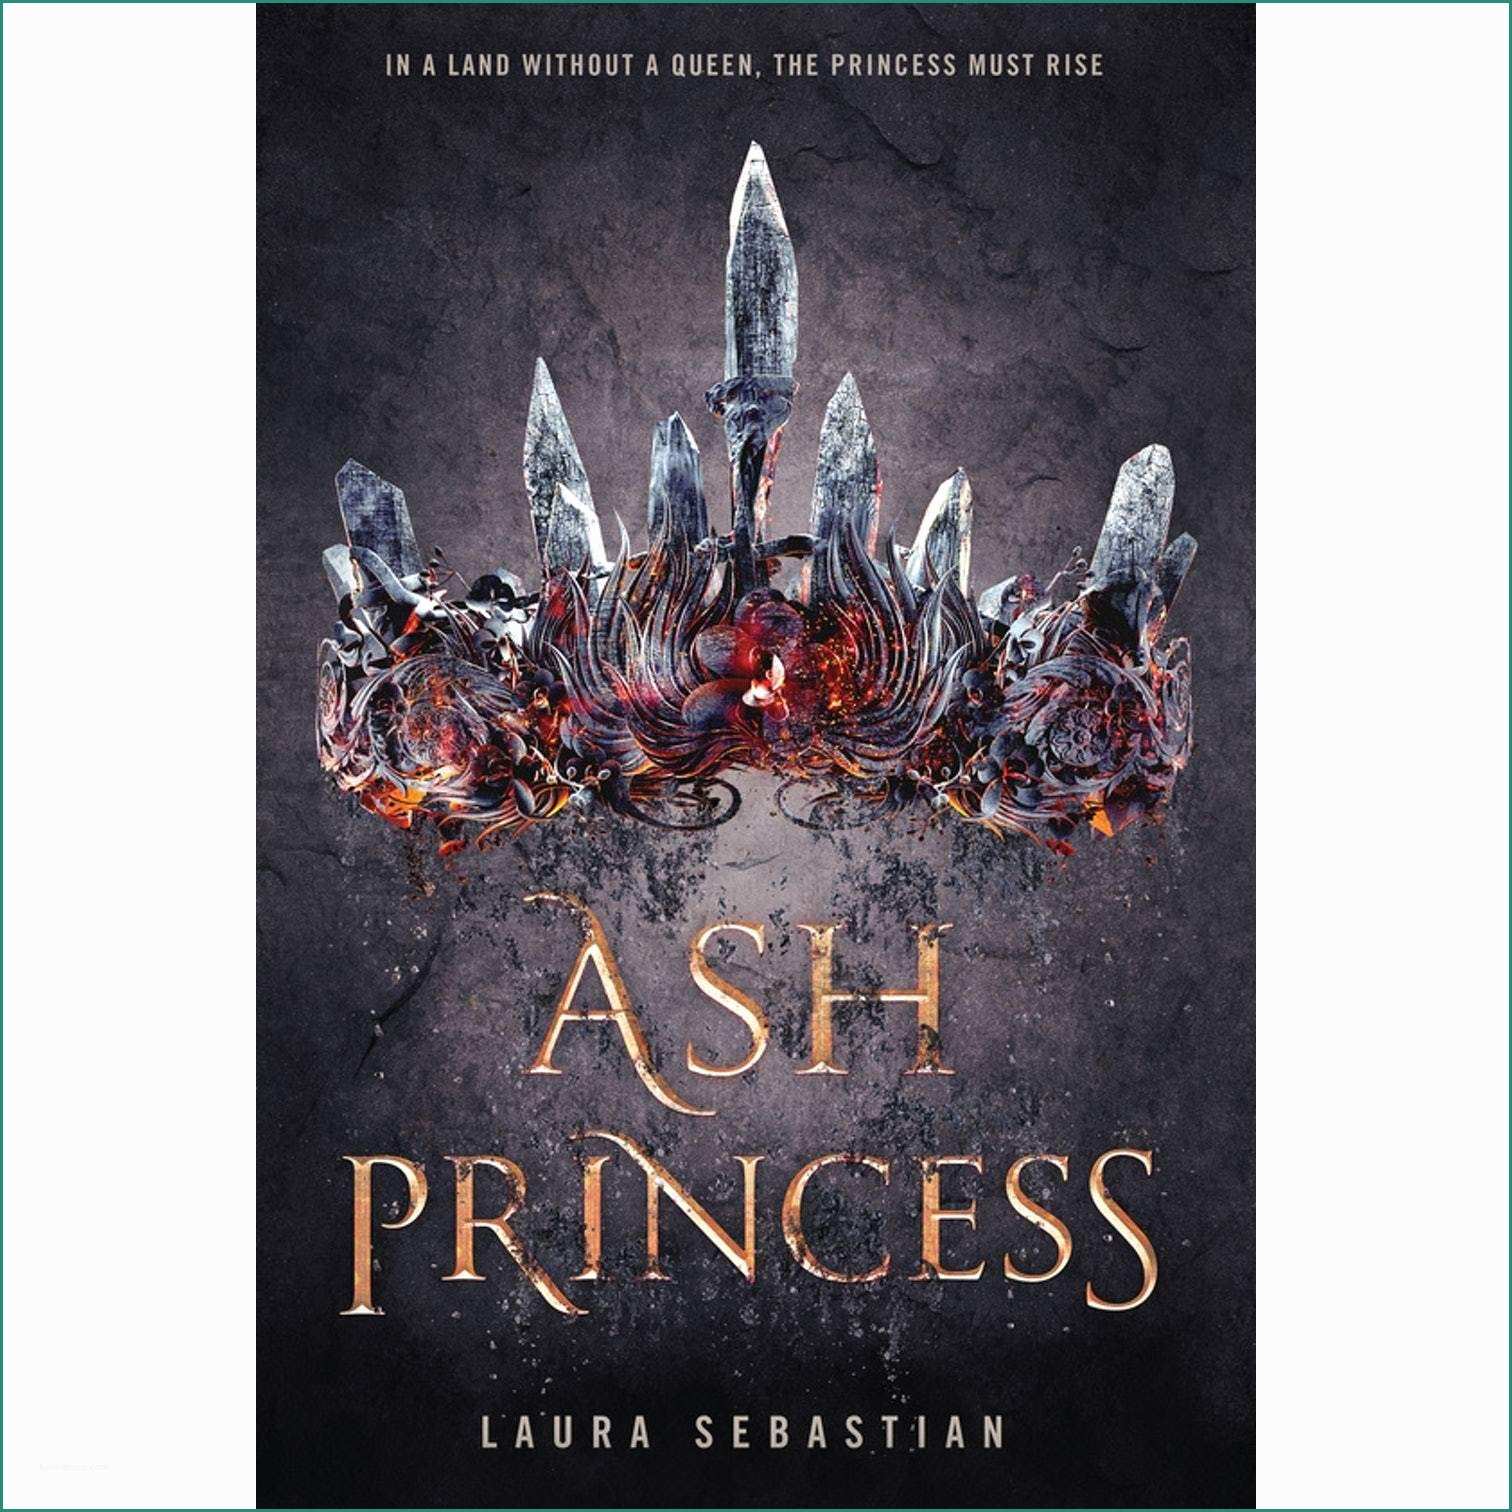 Di Fina Case Mobili E ash Princess ash Princess Trilogy 1 by Laura Sebastian